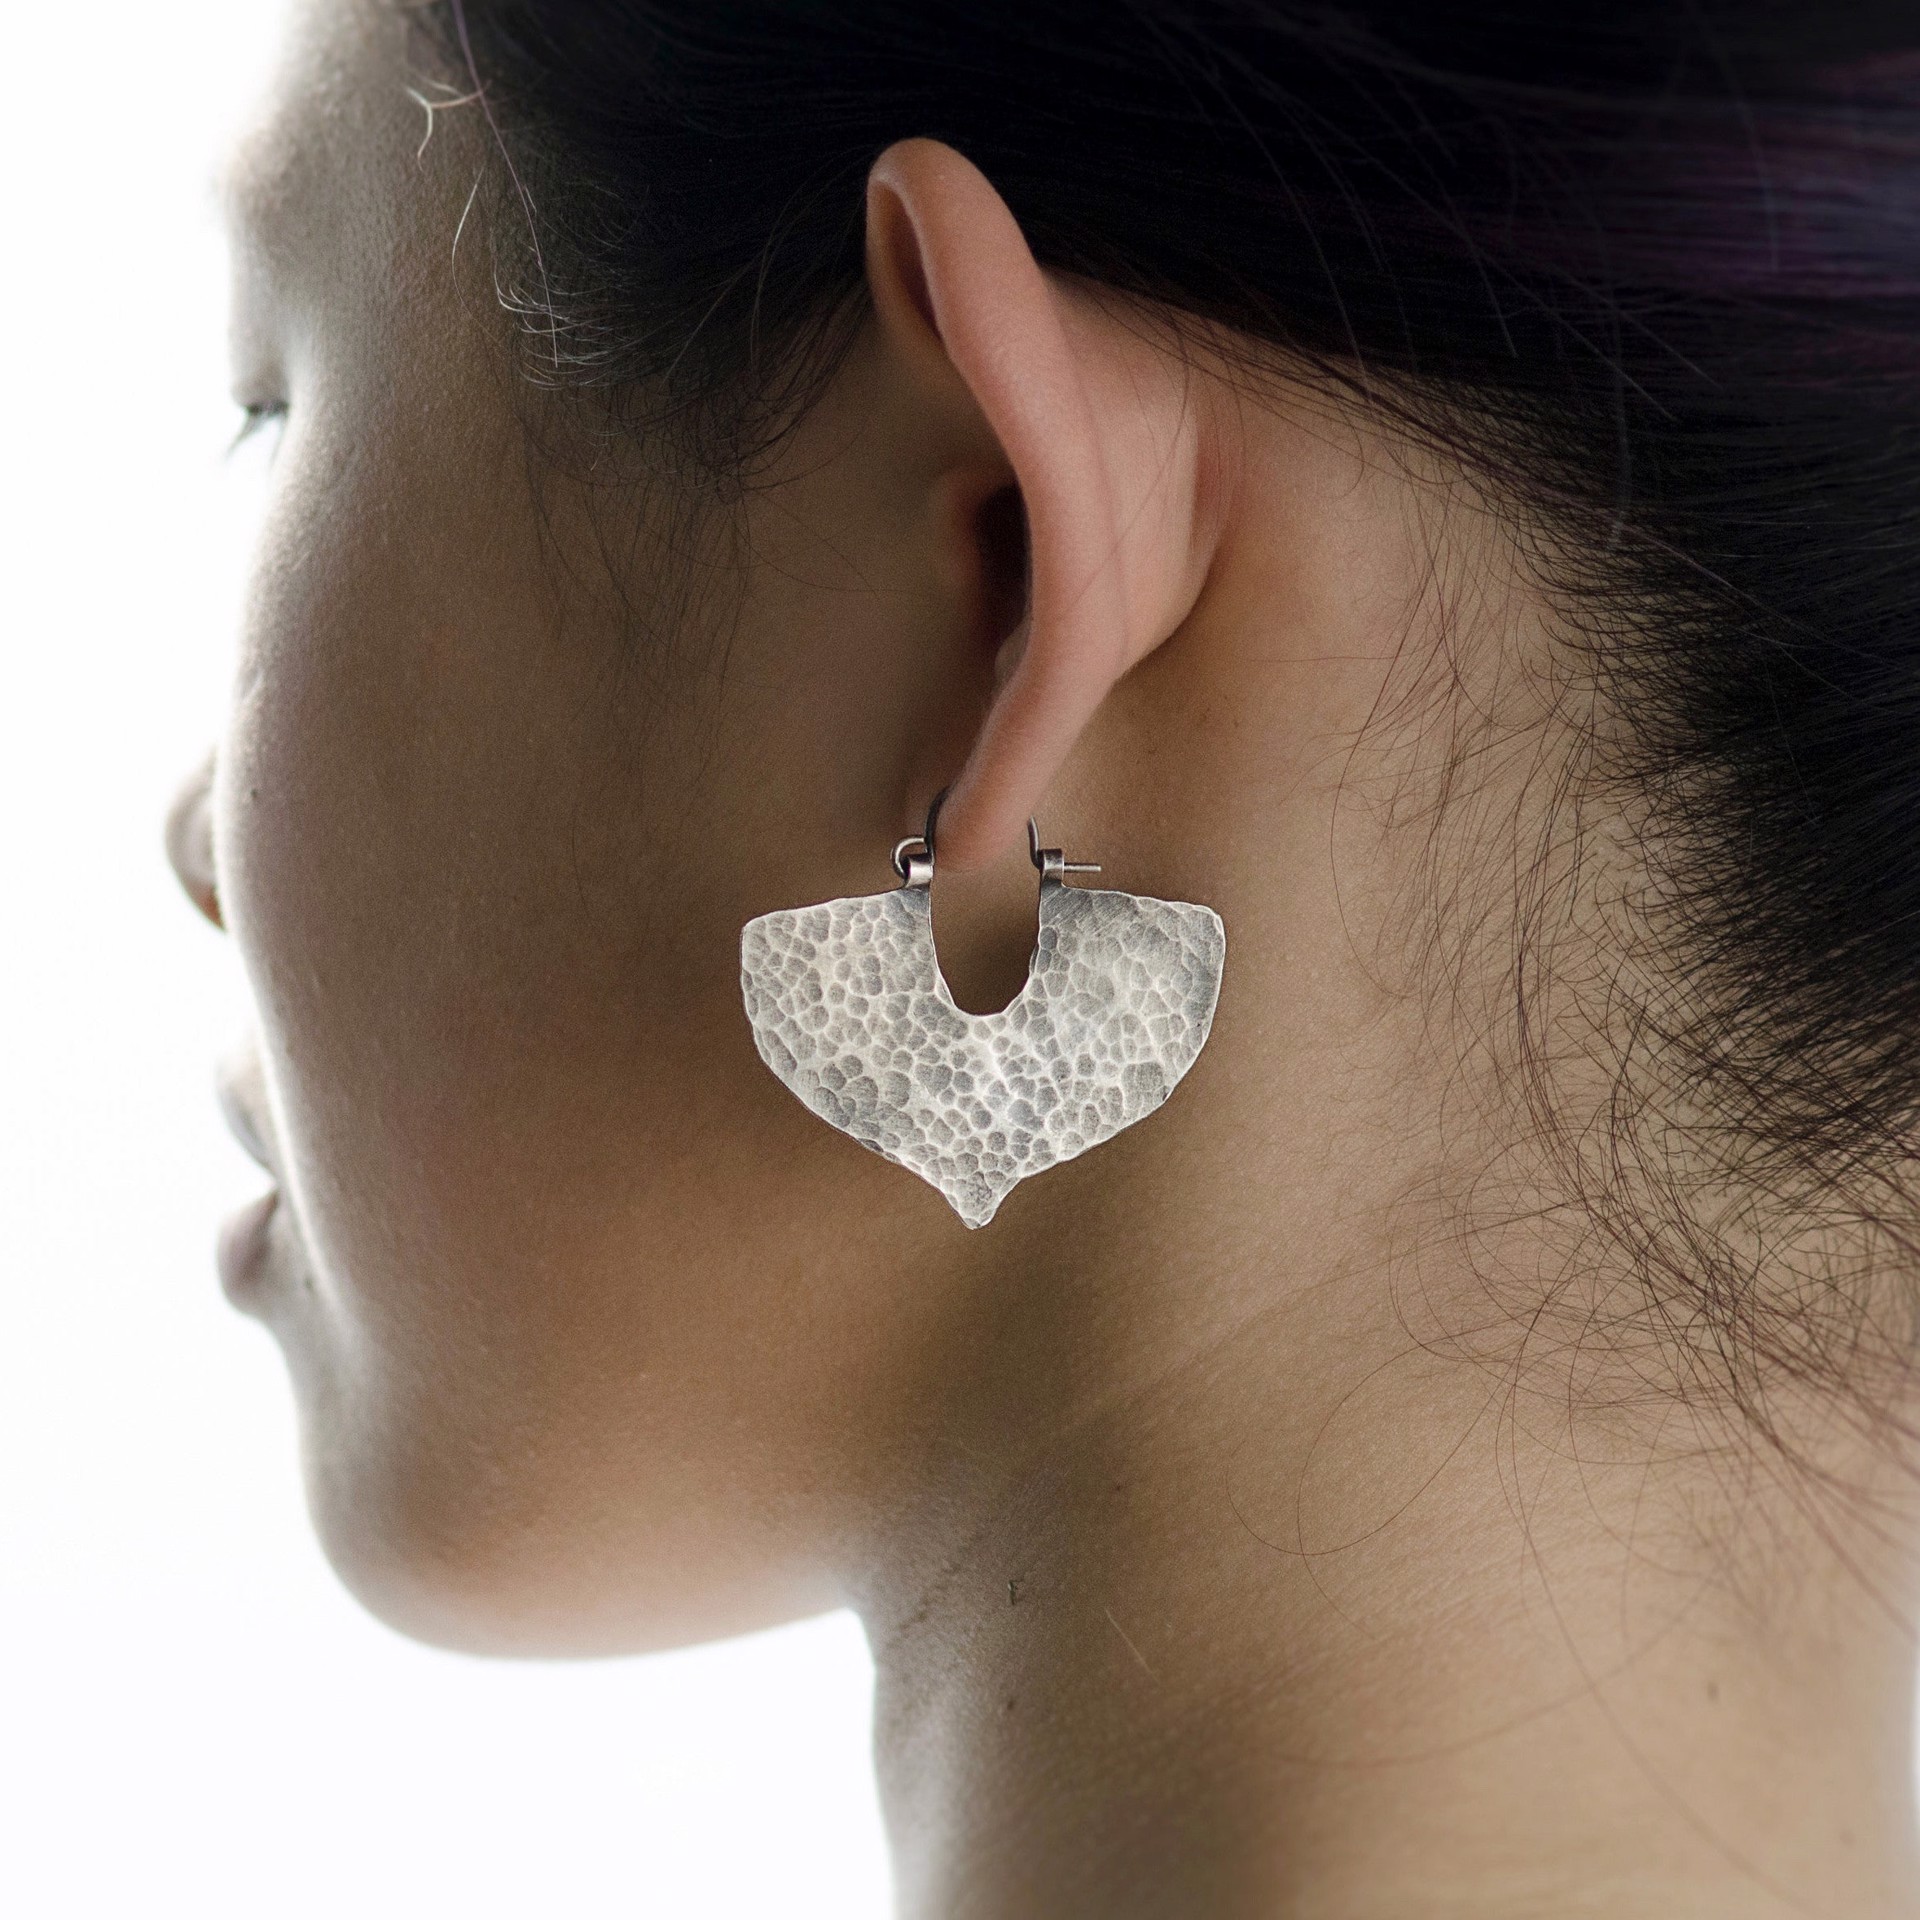 Shield Earrings in Blackened Copper by Clementine & Co. Jewelry